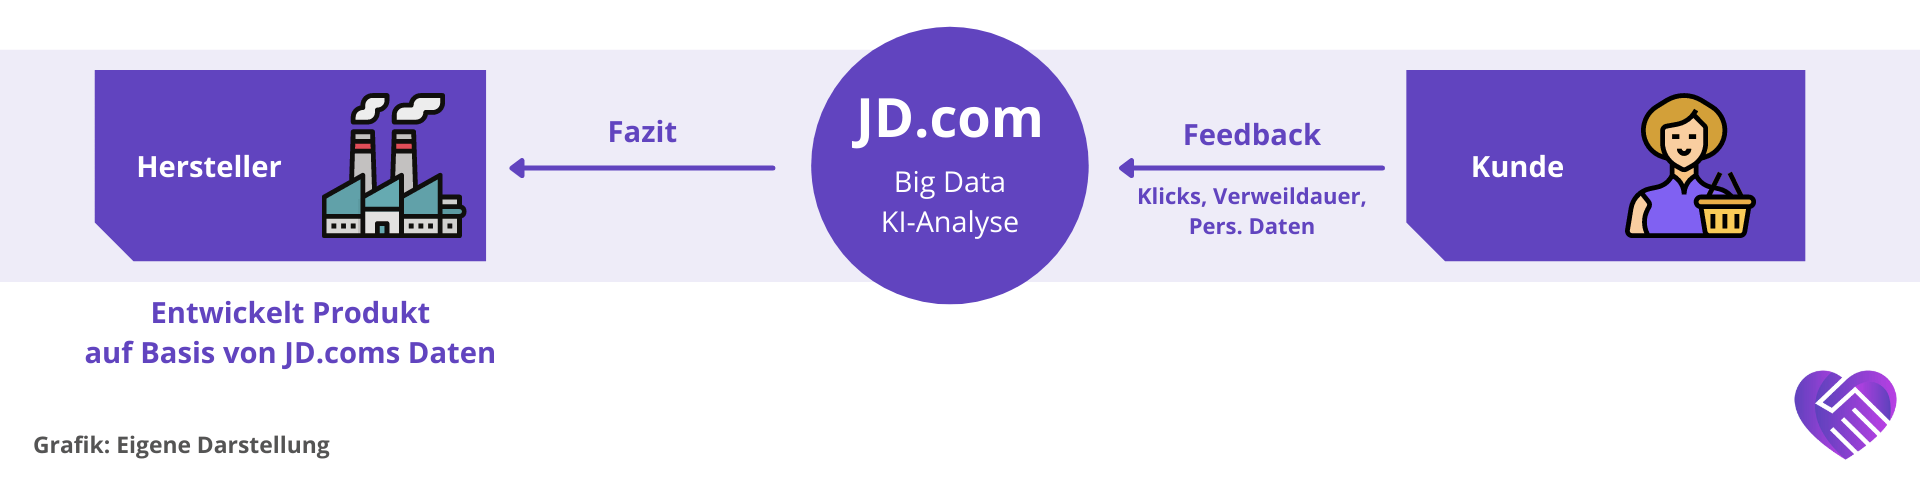 JD.com Aktie Analyse